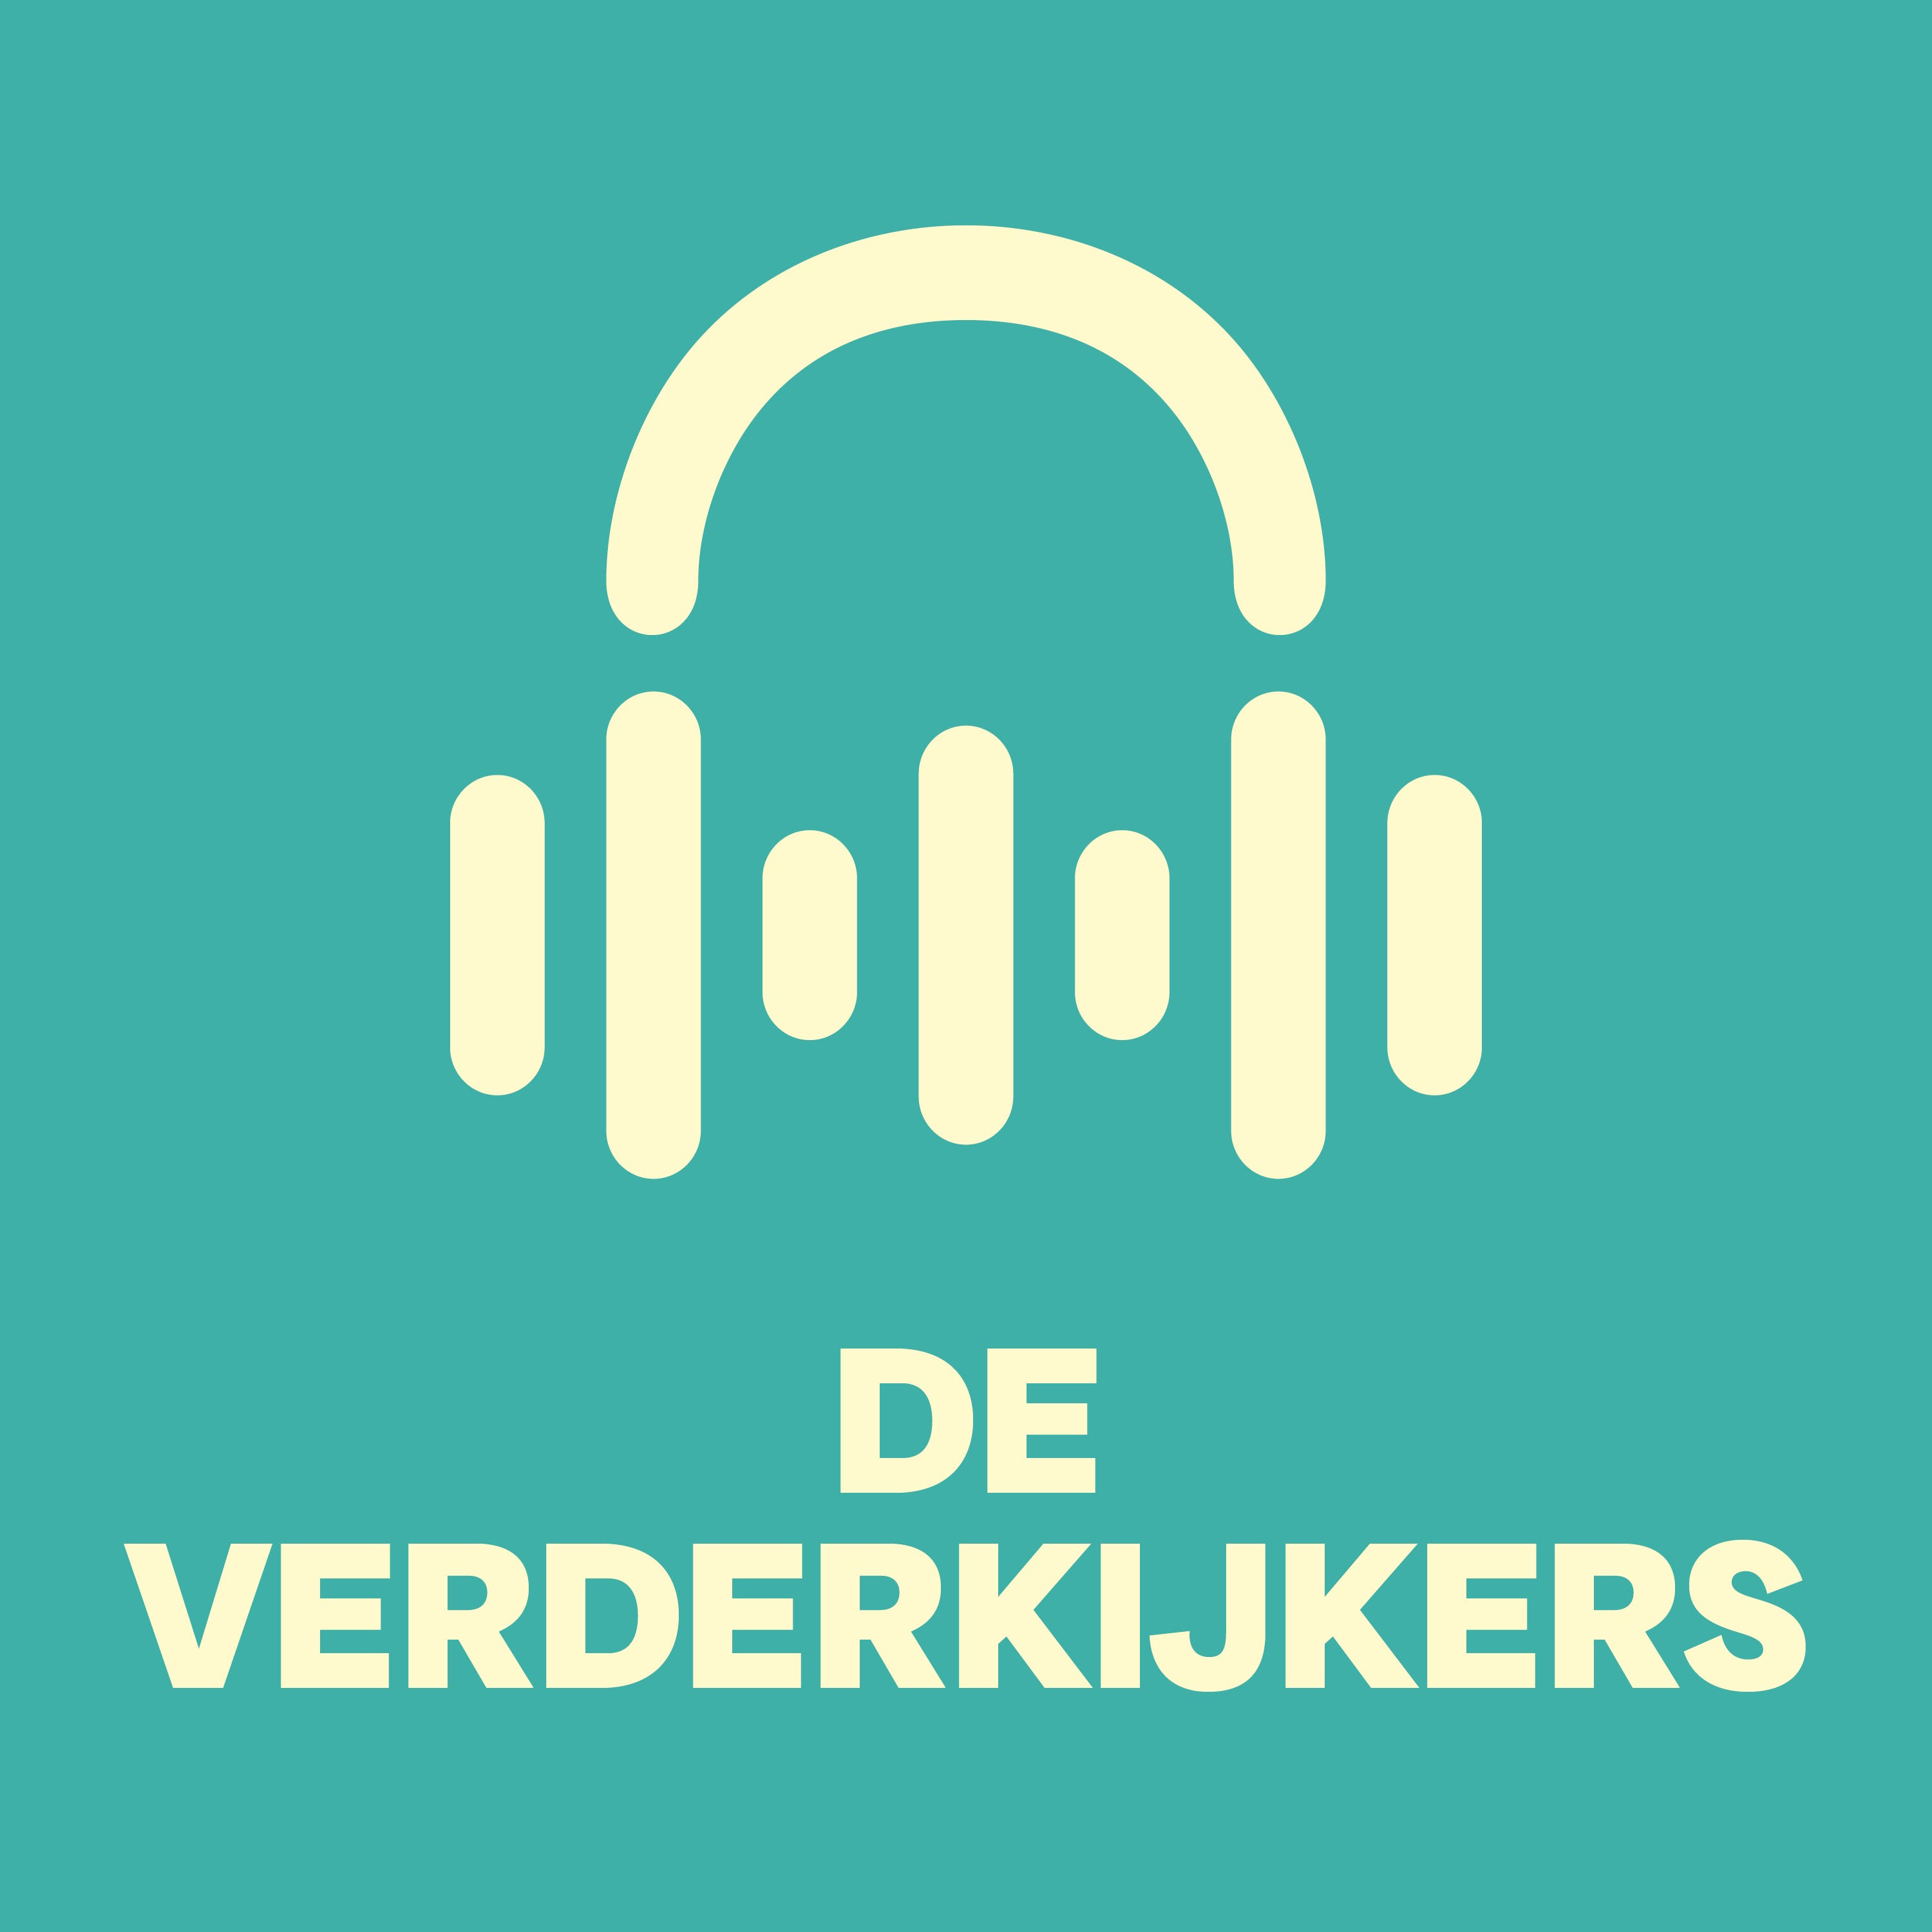 Stijn Martens, Hopr | ‘Als start-up kom je meer kansen dan moeilijkheden tegen’